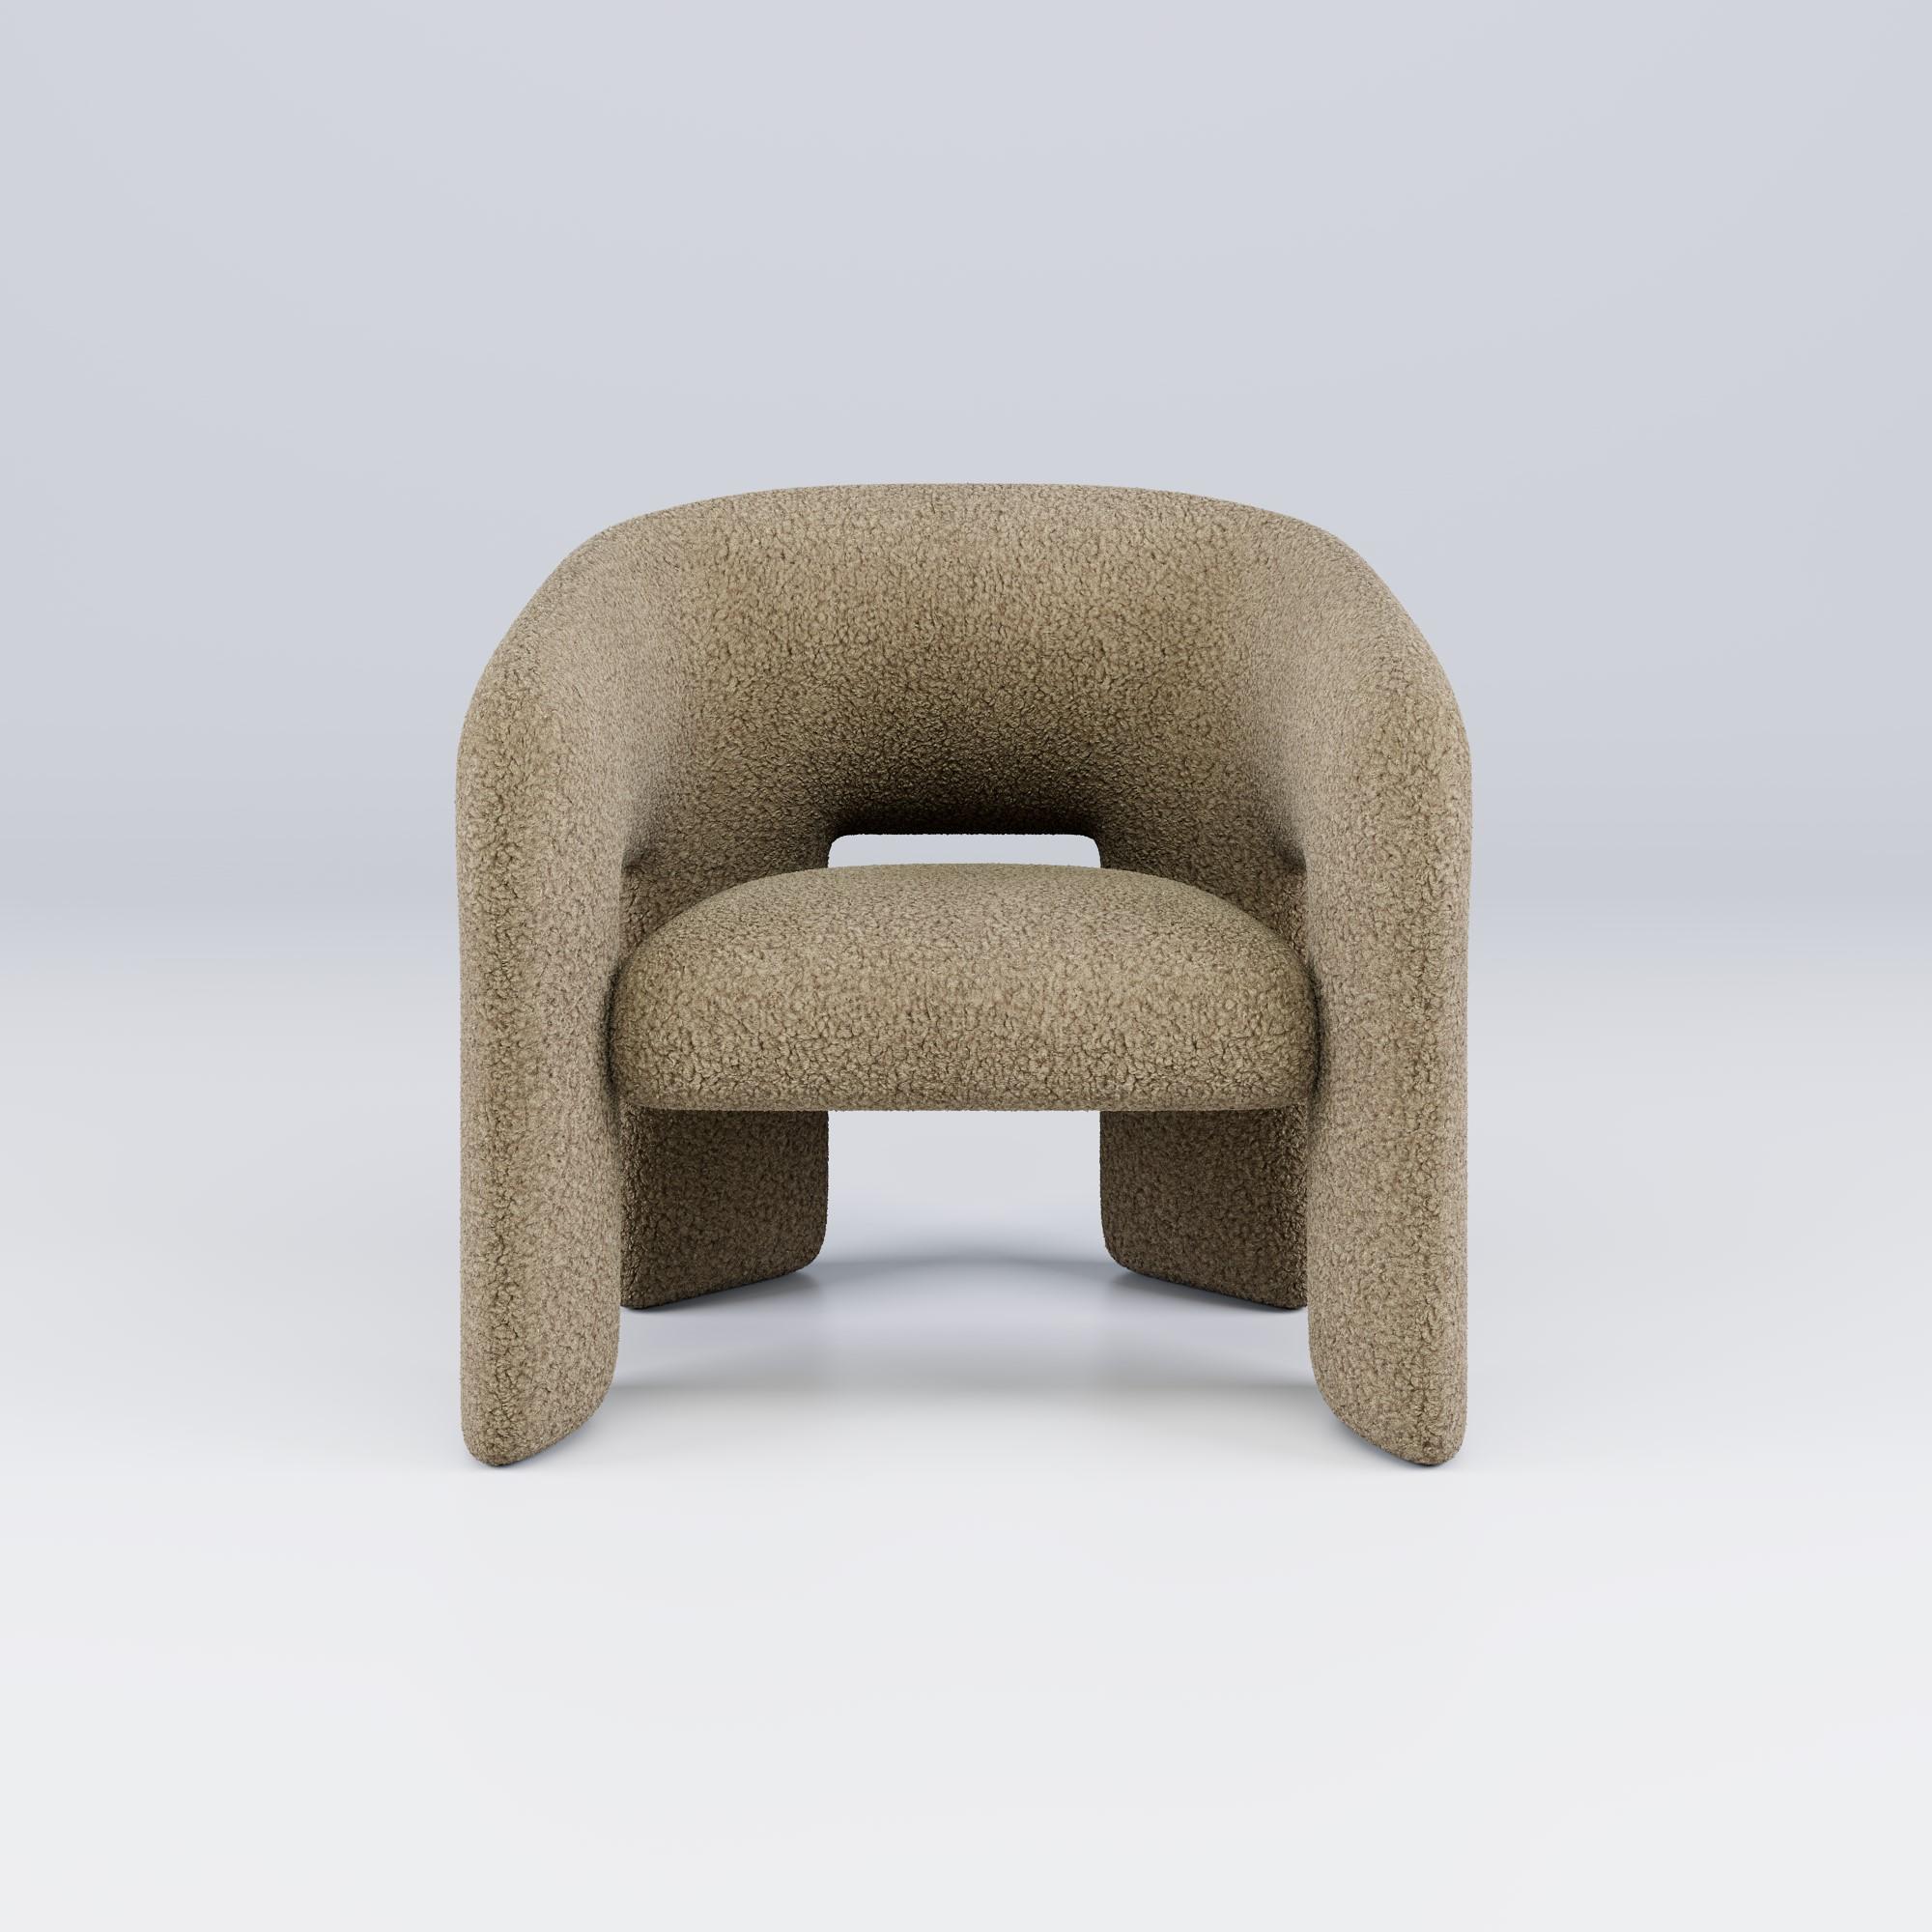 Célébrant l'art de la sophistication décontractée, le fauteuil Bold est une pièce d'apparat qui incarne l'esprit du design moderne. L'utilisation habile de matériaux de haute qualité, combinée à un savoir-faire artisanal, confère au fauteuil Bold un